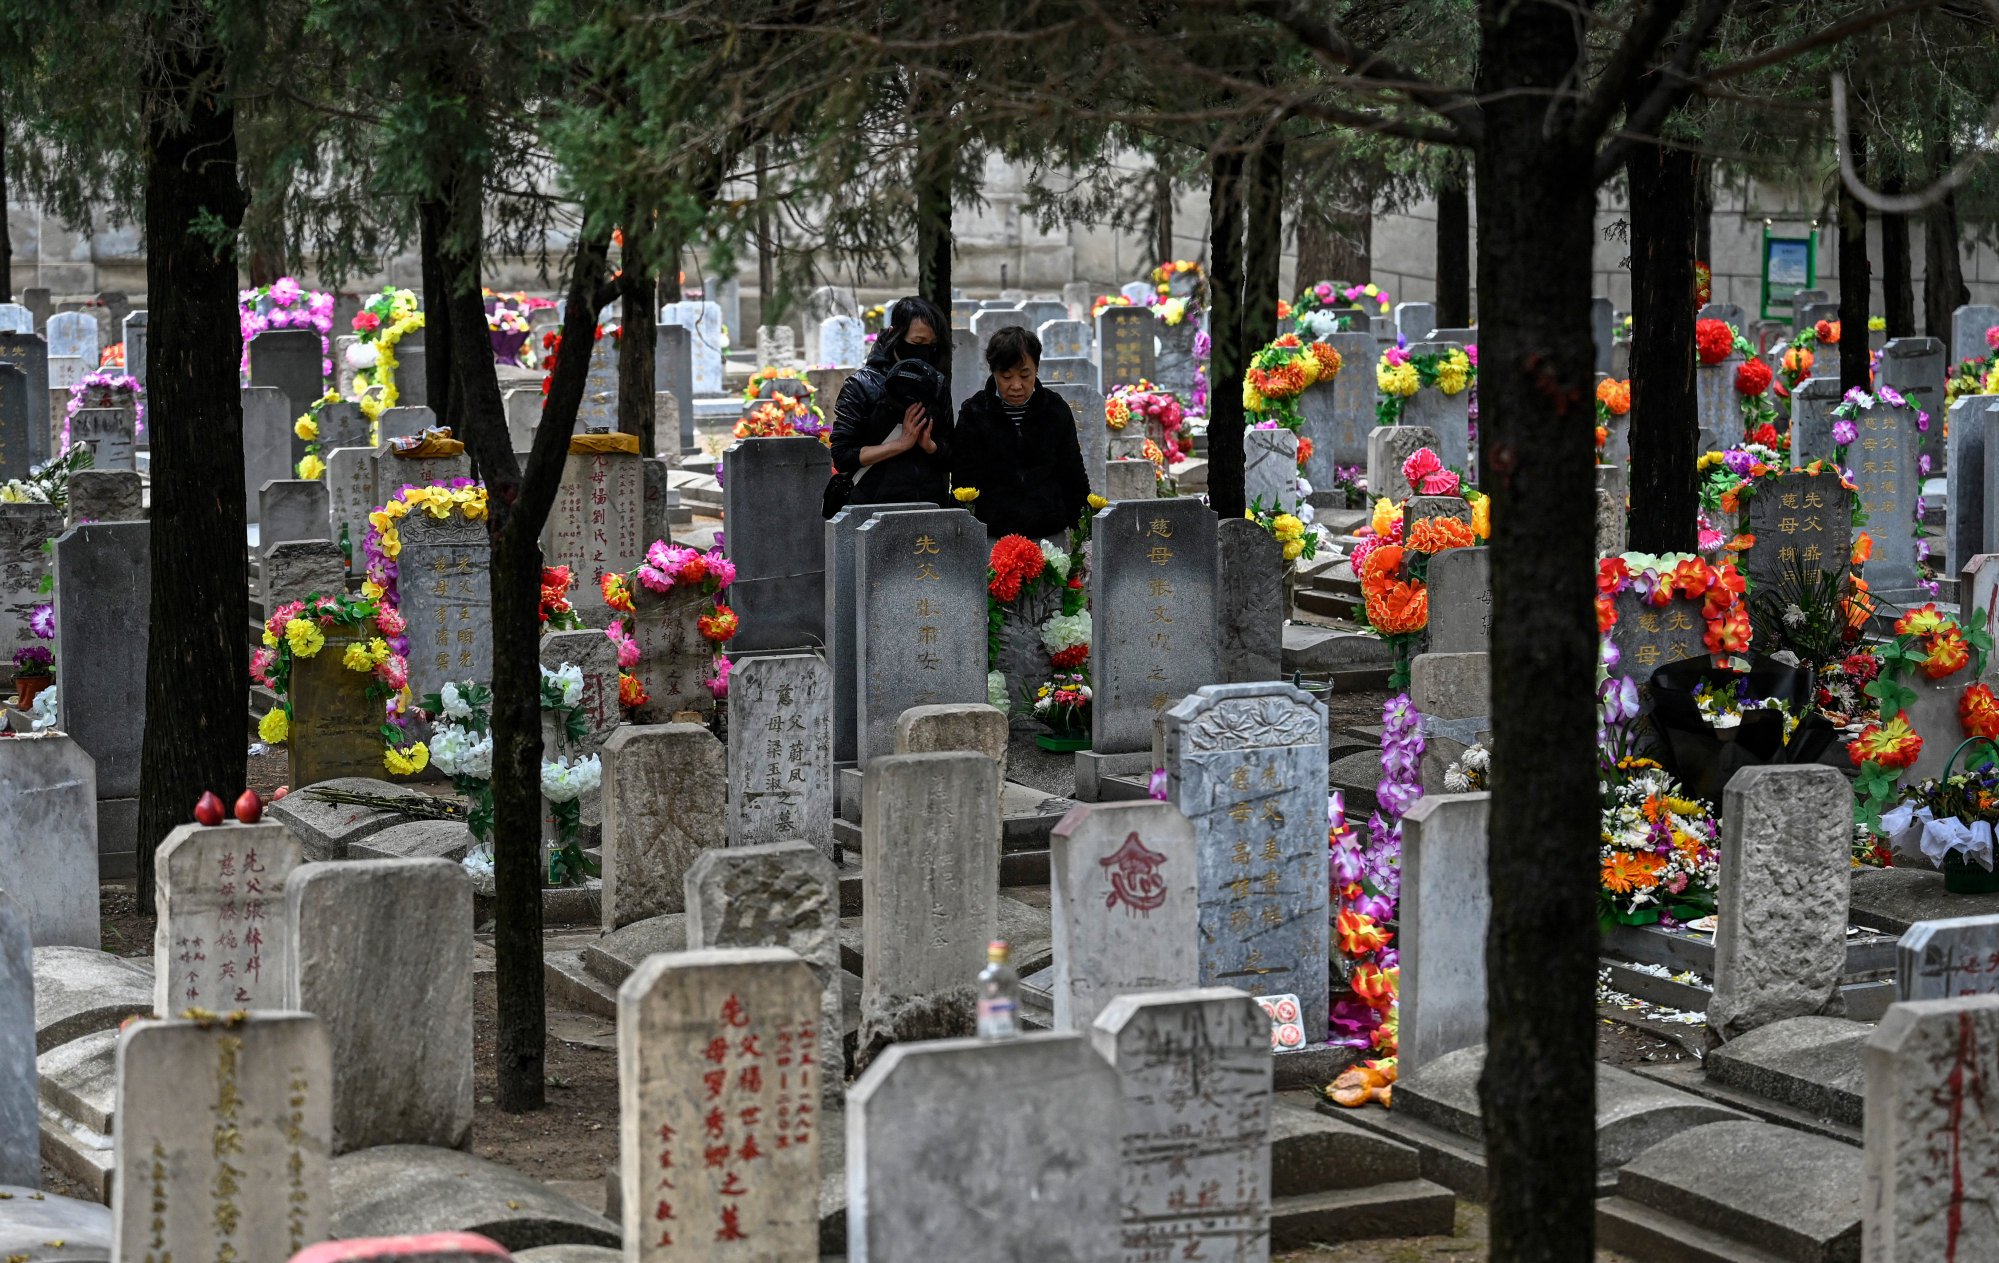 Las ciudades chinas arman escándalo al prohibir la venta de papel joss y las 'supersticiones feudales' en el Festival Qing Ming